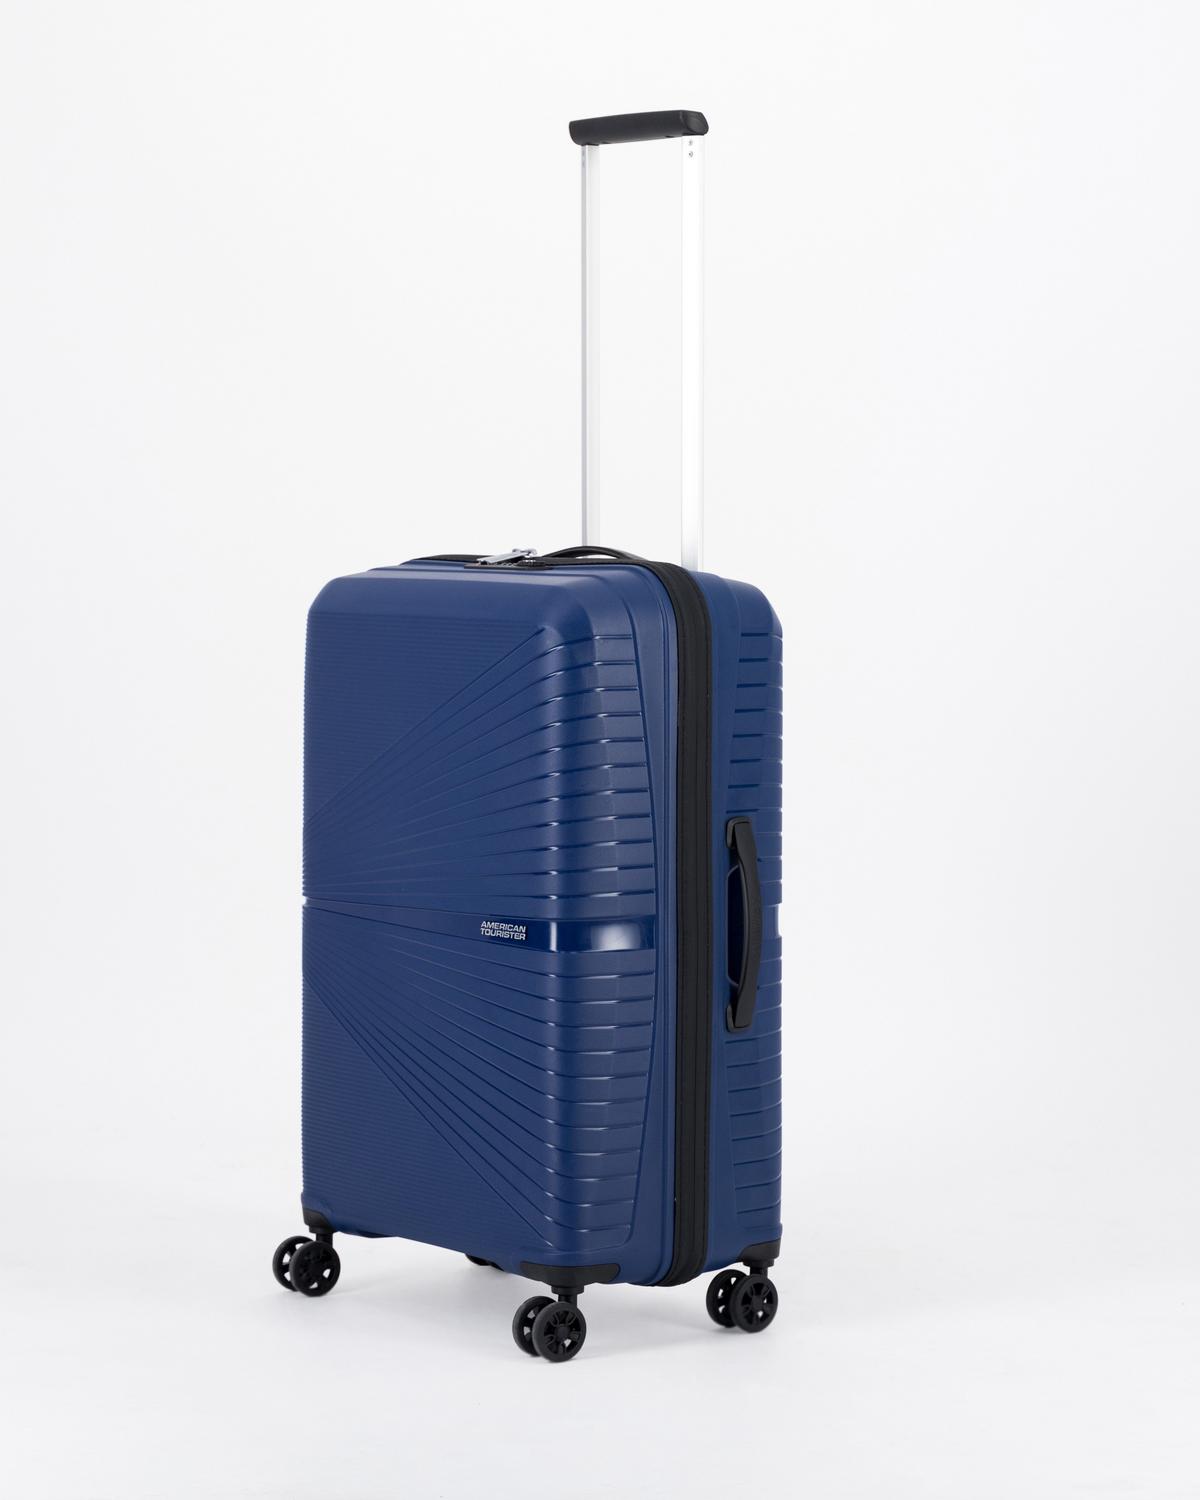 American Tourister Airconic 67cm Luggage Bag